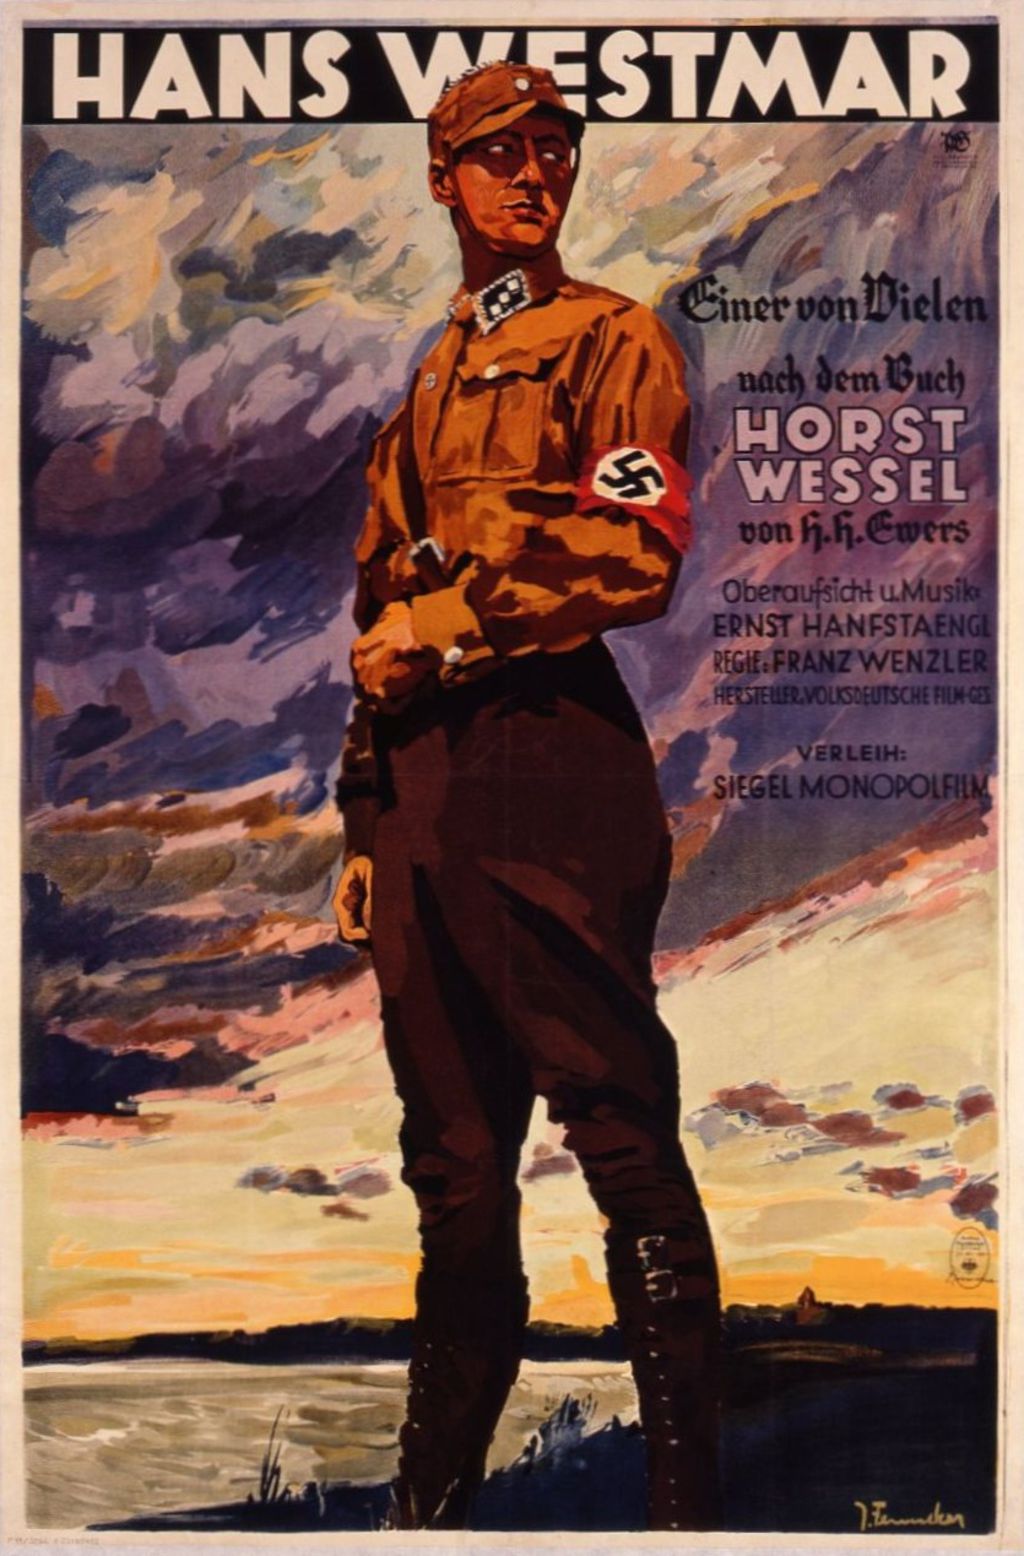 Exponat: Filmplakat: "Hans Westmar", 1933